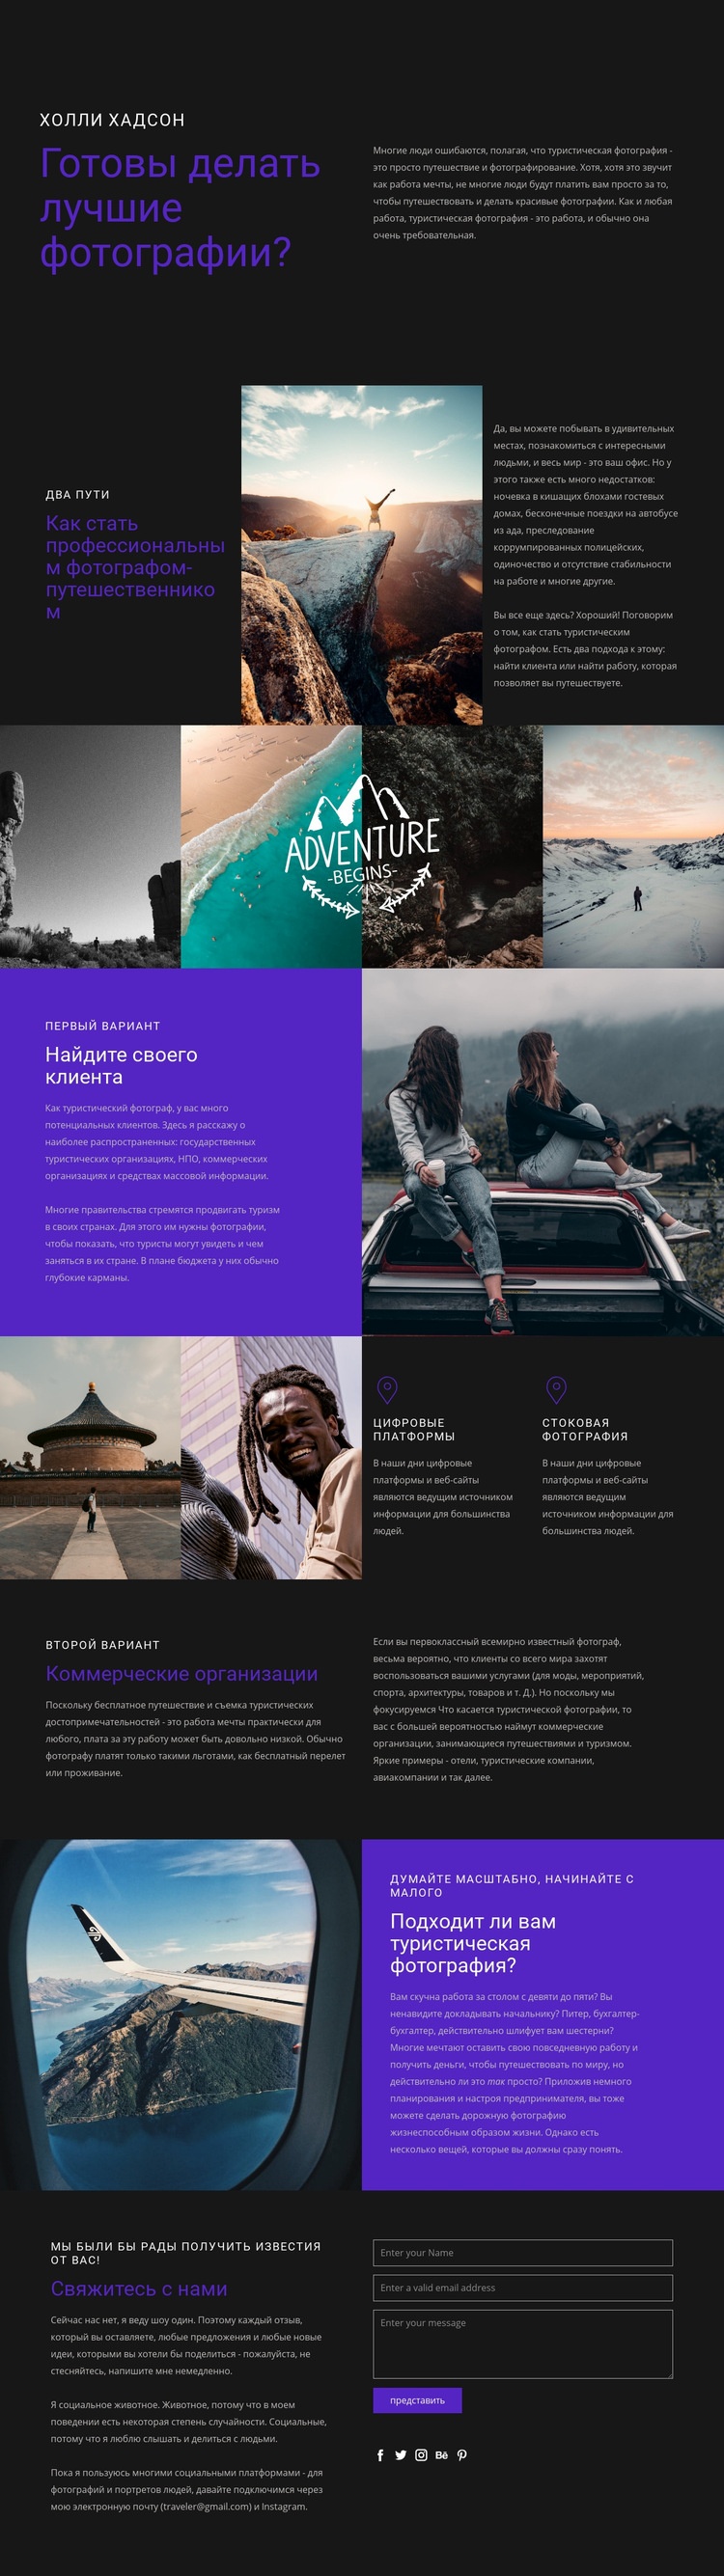 Путешествия и фотография Дизайн сайта